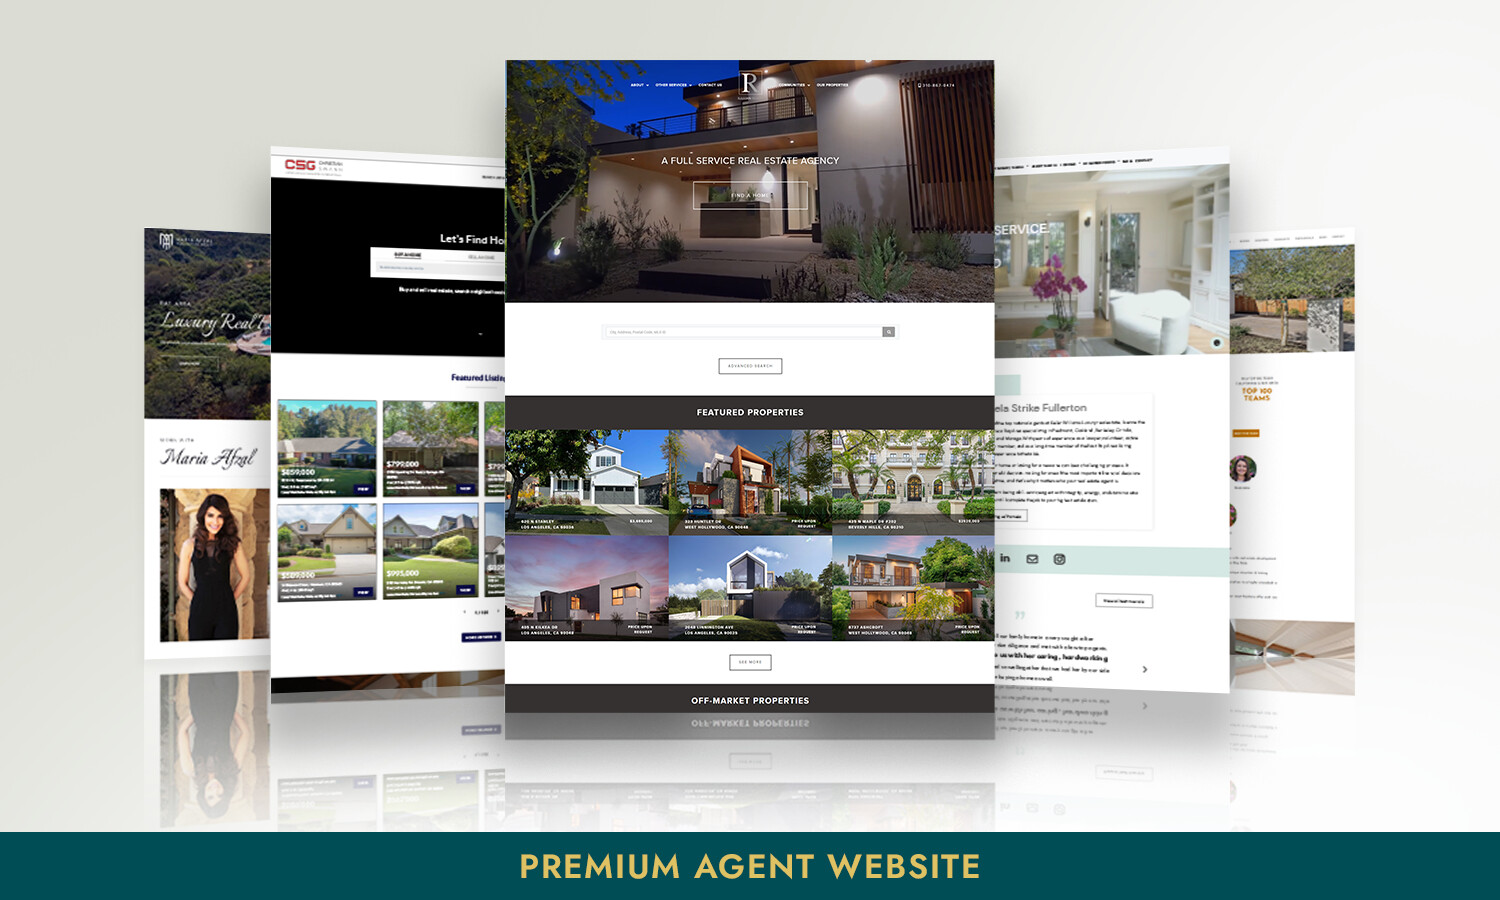 Premium Agent Website